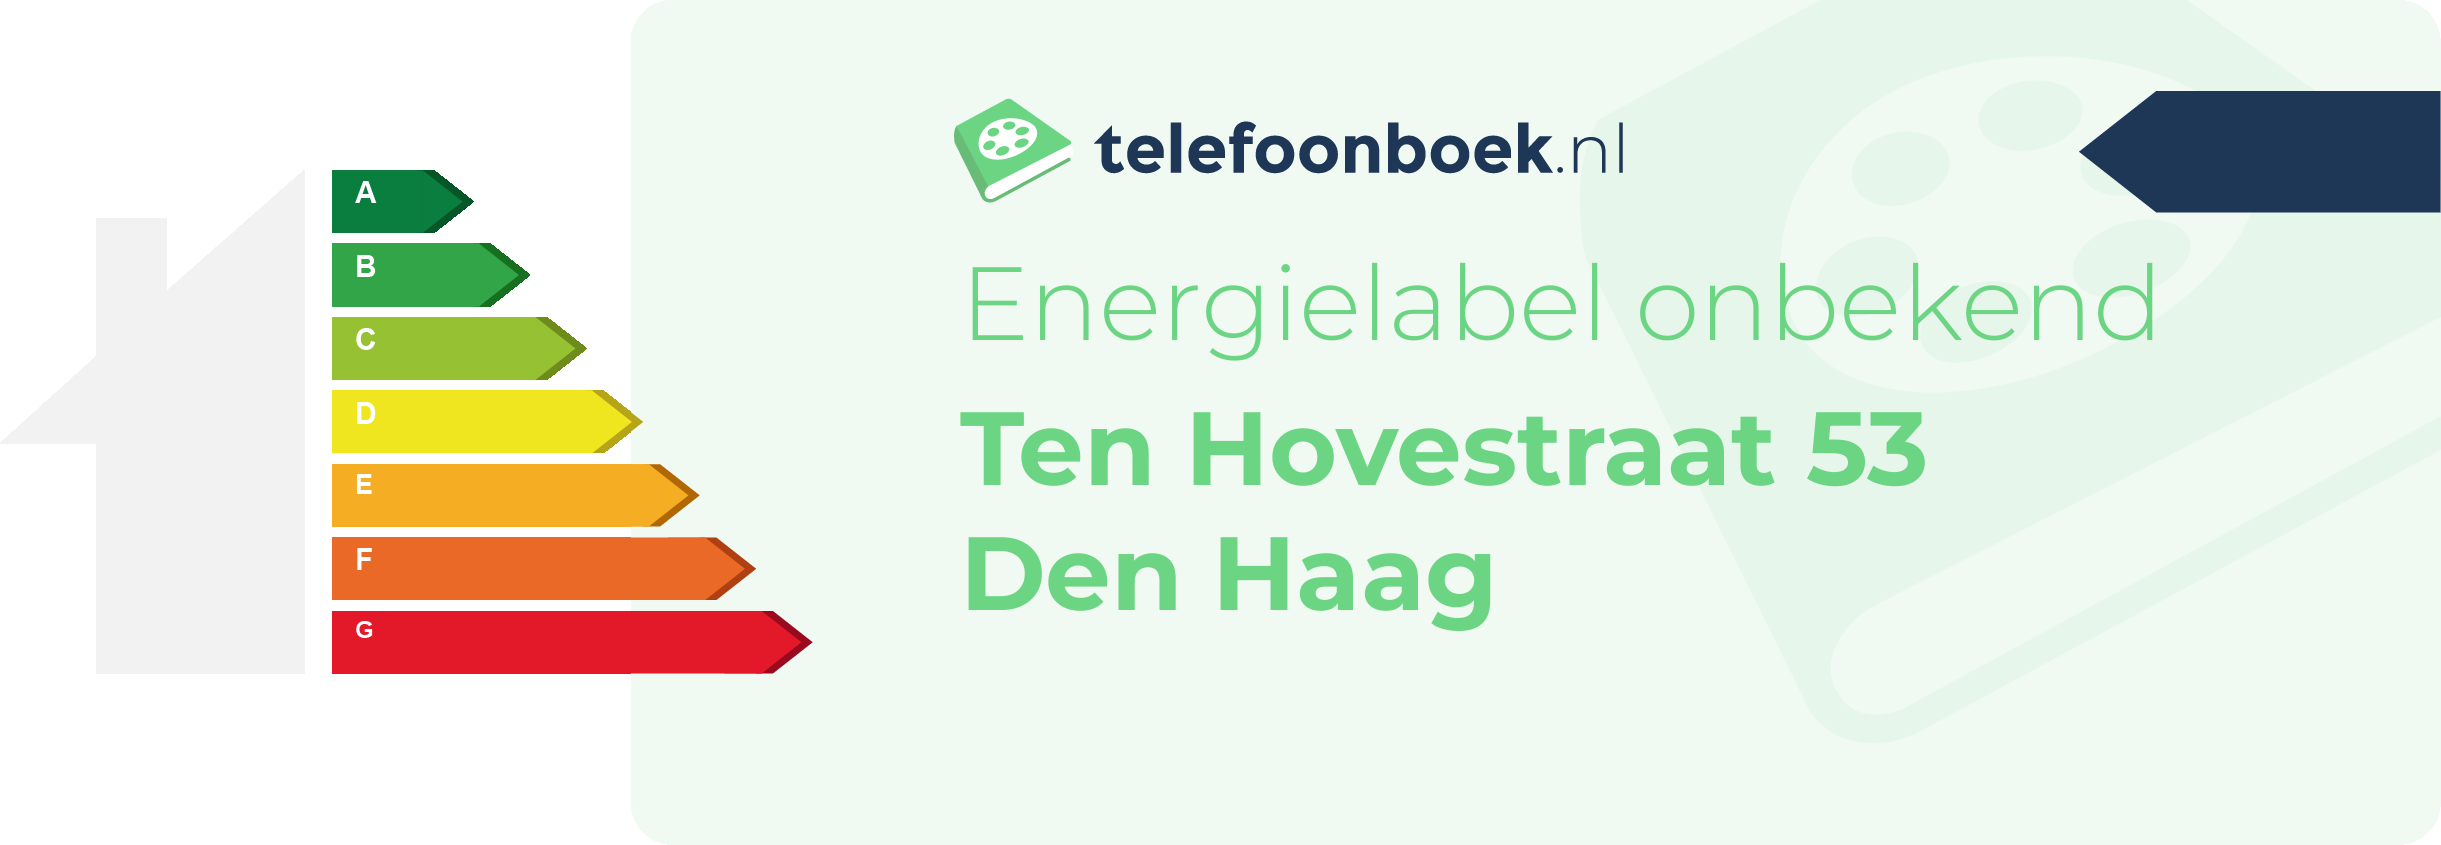 Energielabel Ten Hovestraat 53 Den Haag